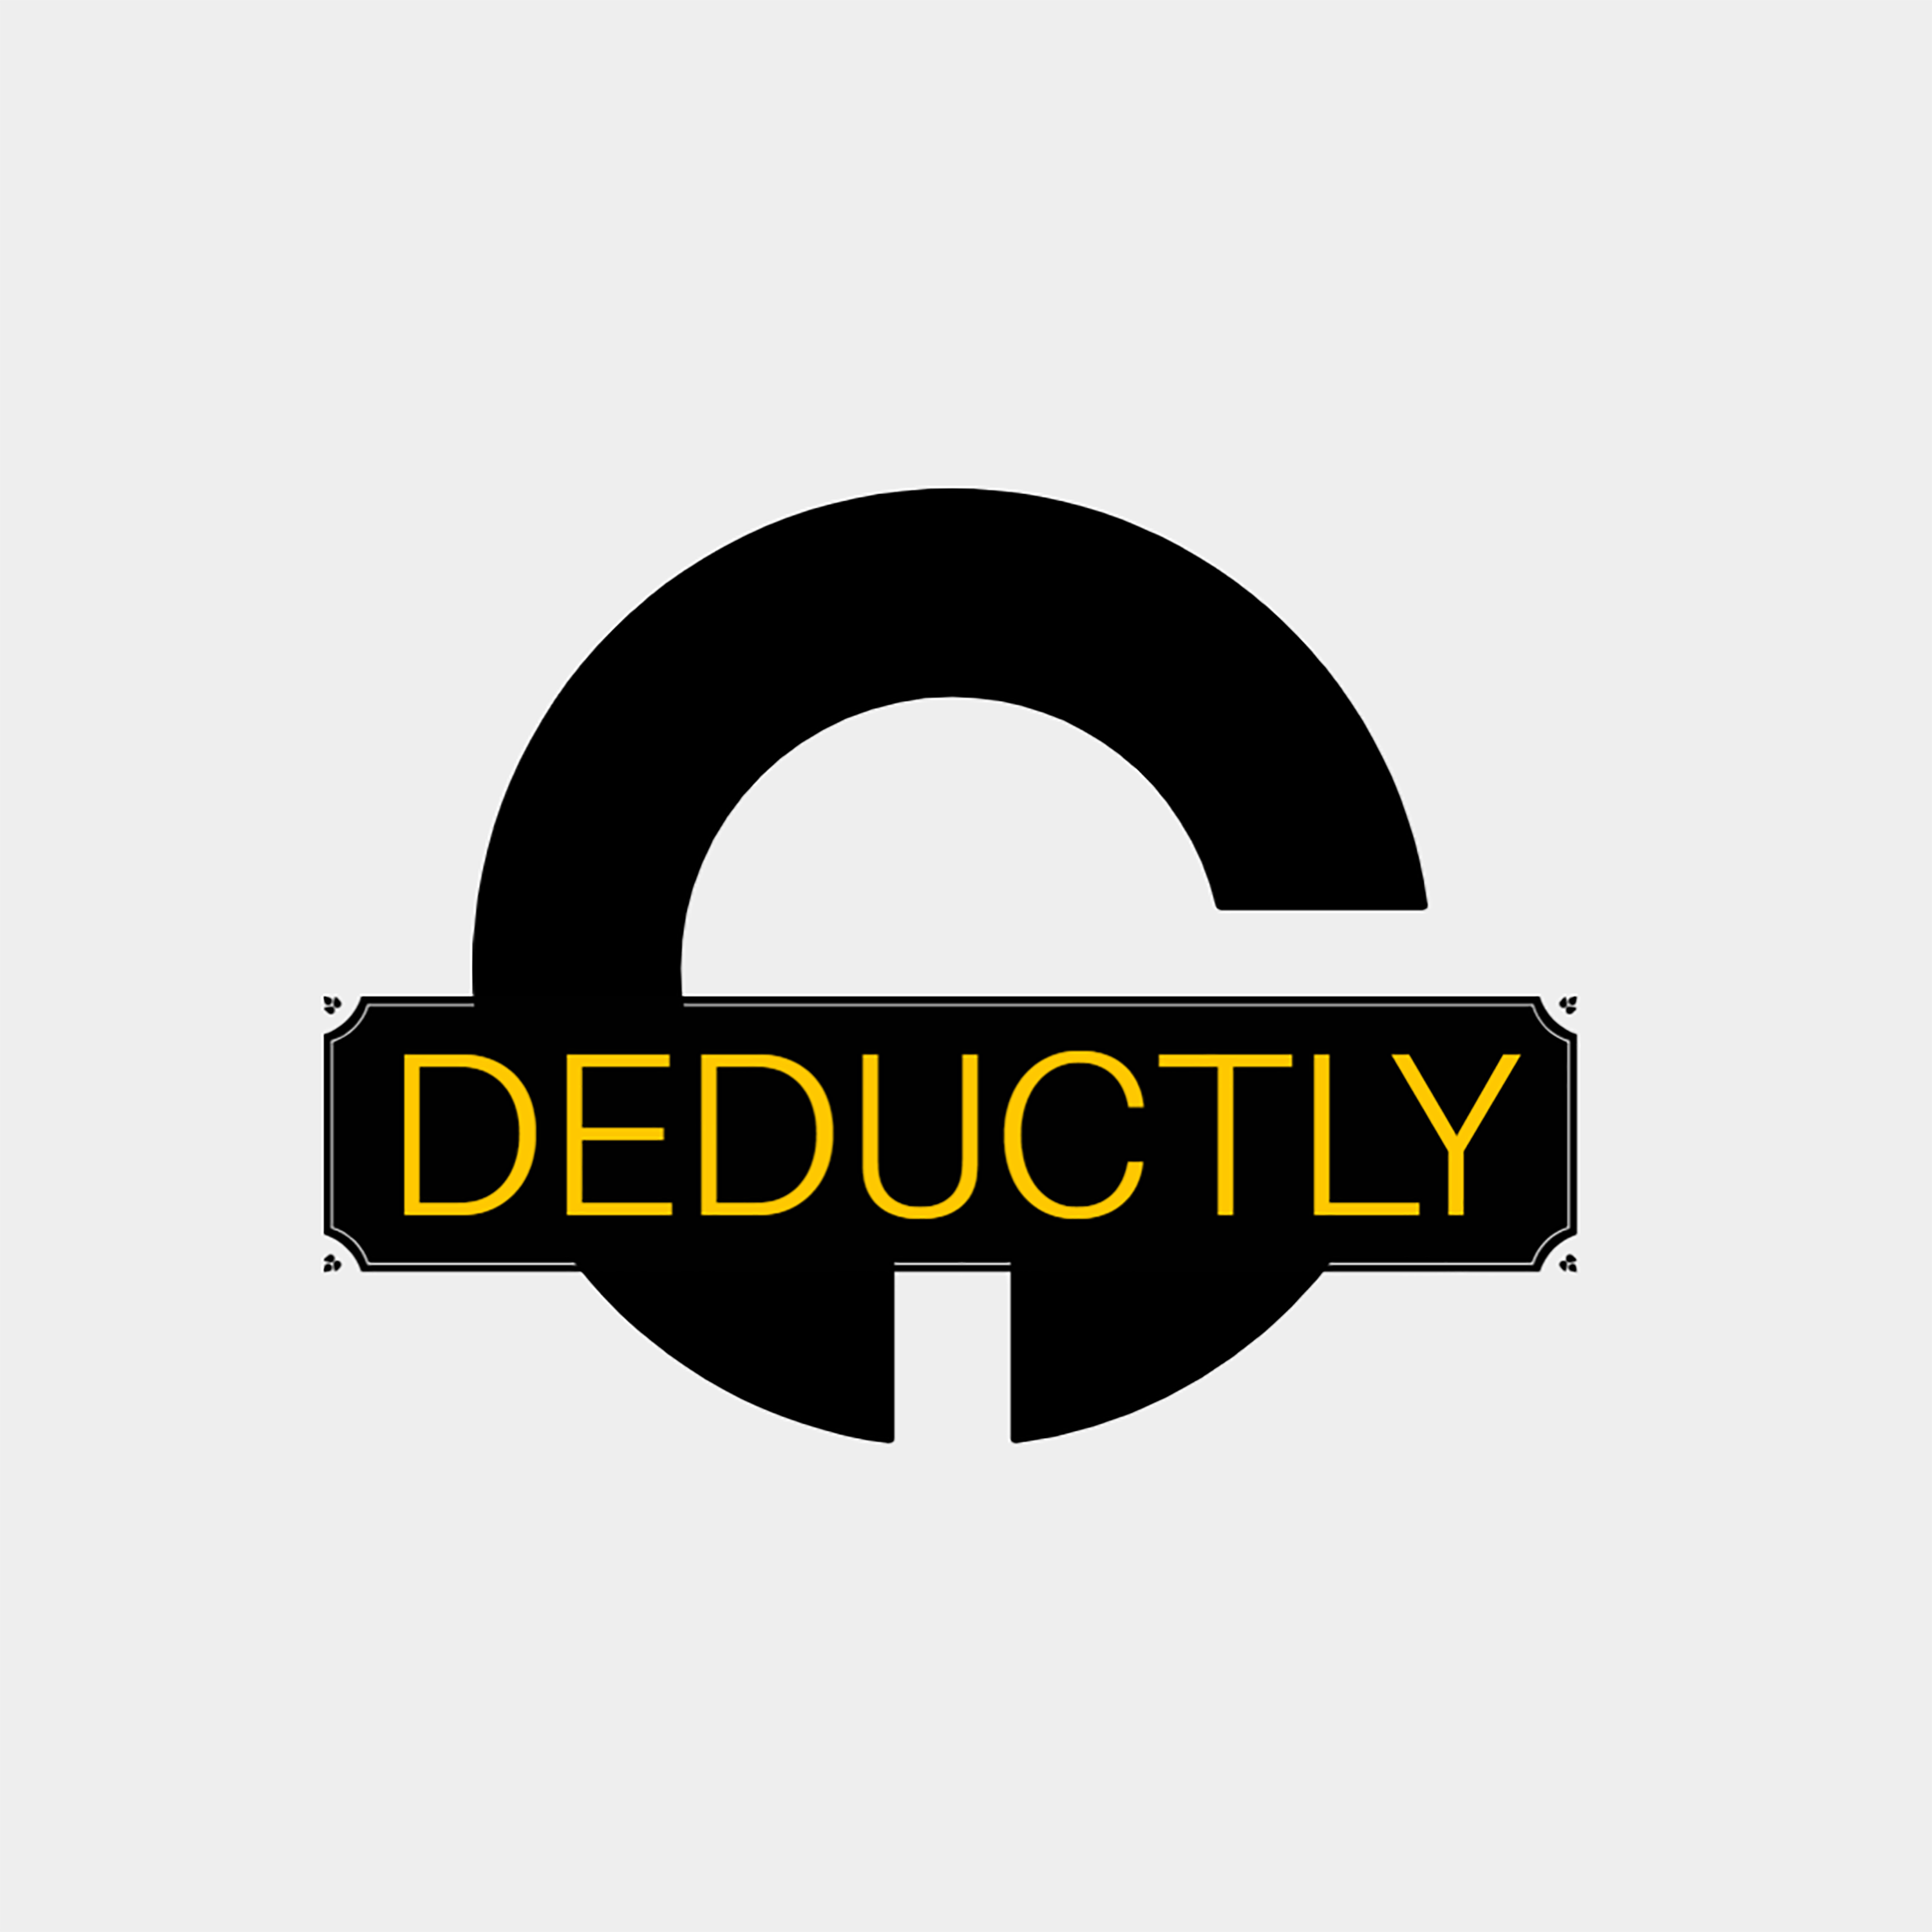 DEDUCTLY logo